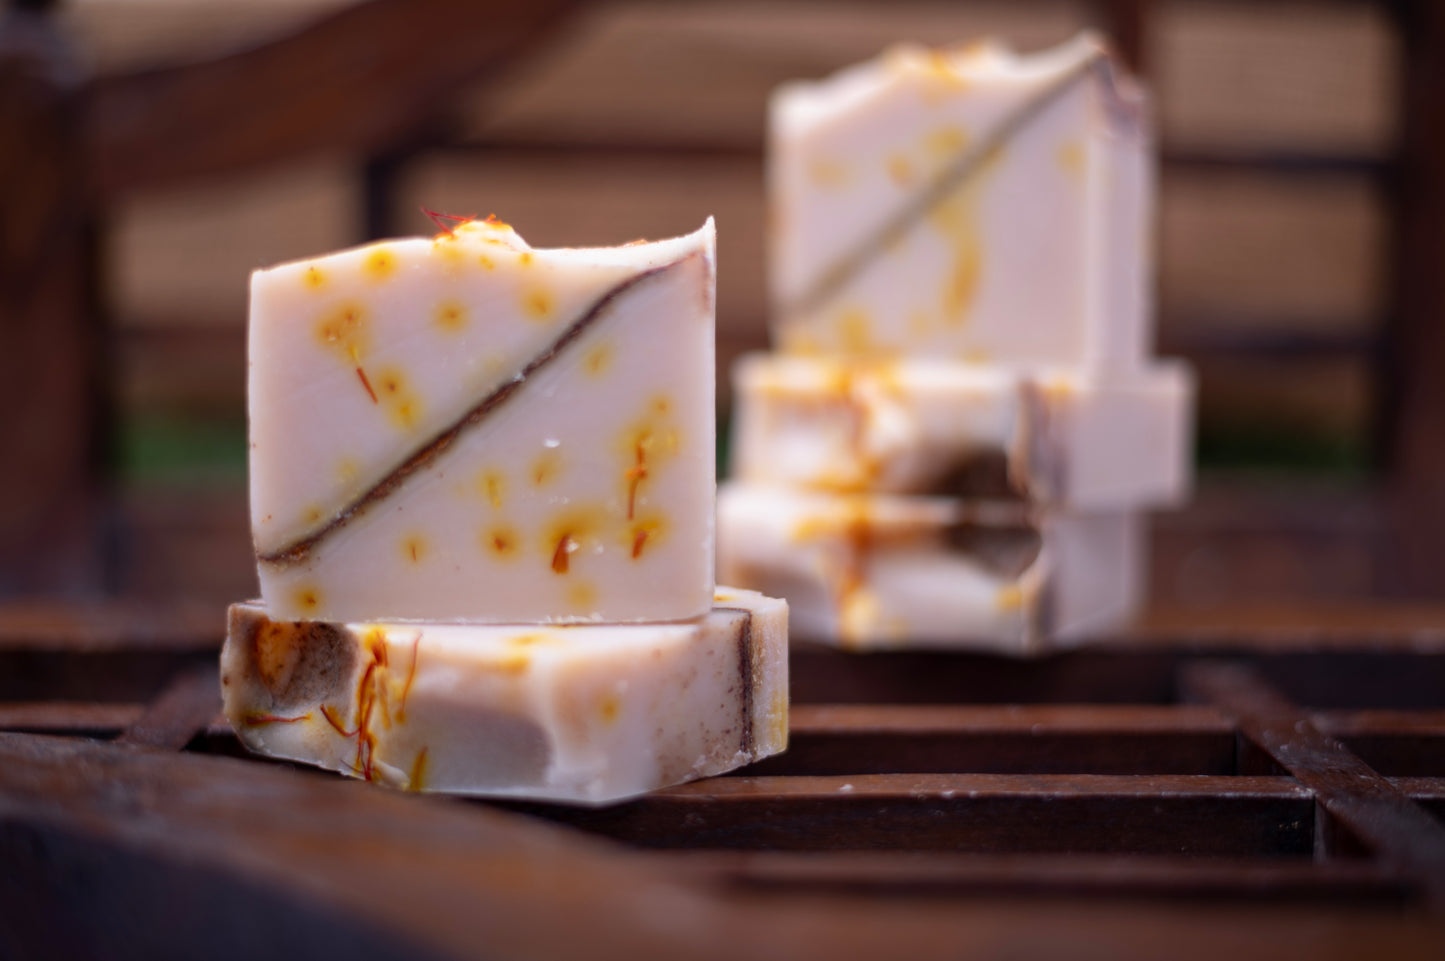 Kesar Chandan Cold Processed Handmade Natural Organic Premium Soap